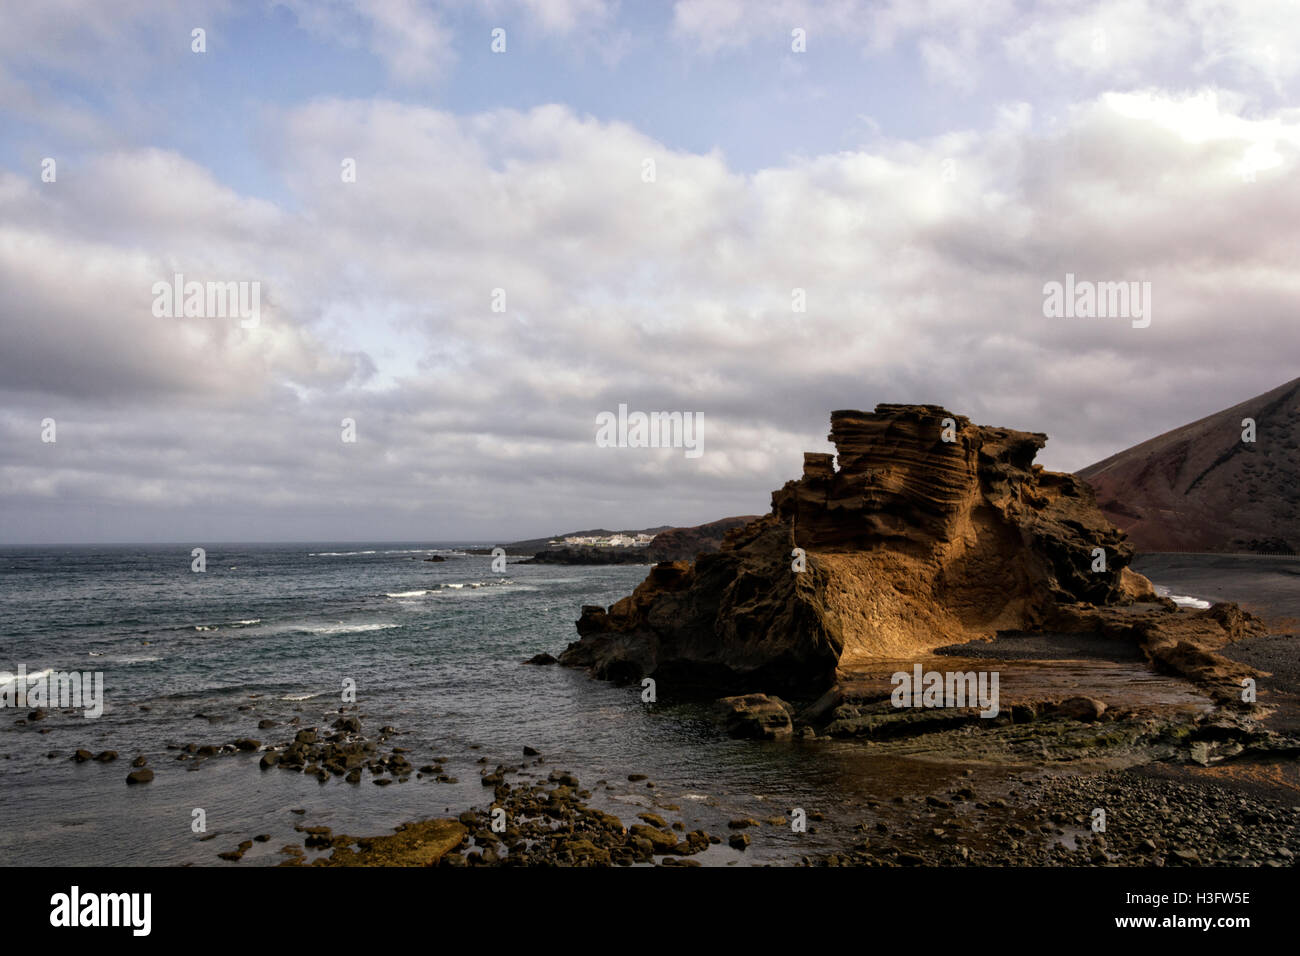 El Golfo - Lanzarote Playa Blanca Spain Stock Photo